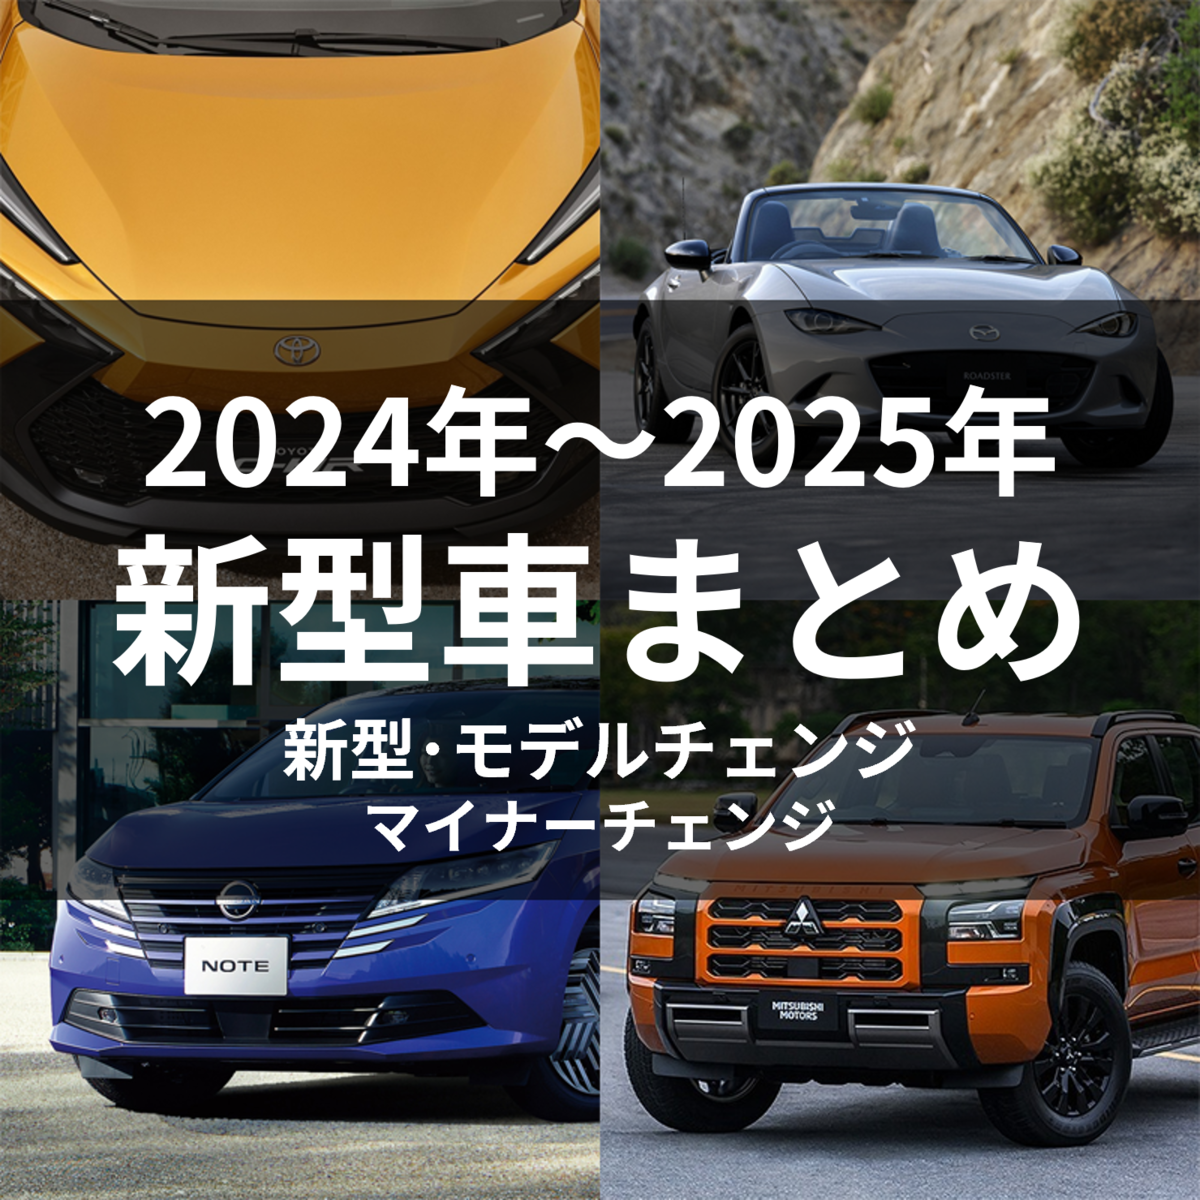 2024～2025年 新車情報】新型車とモデルチェンジ予定の車を総まとめ ...